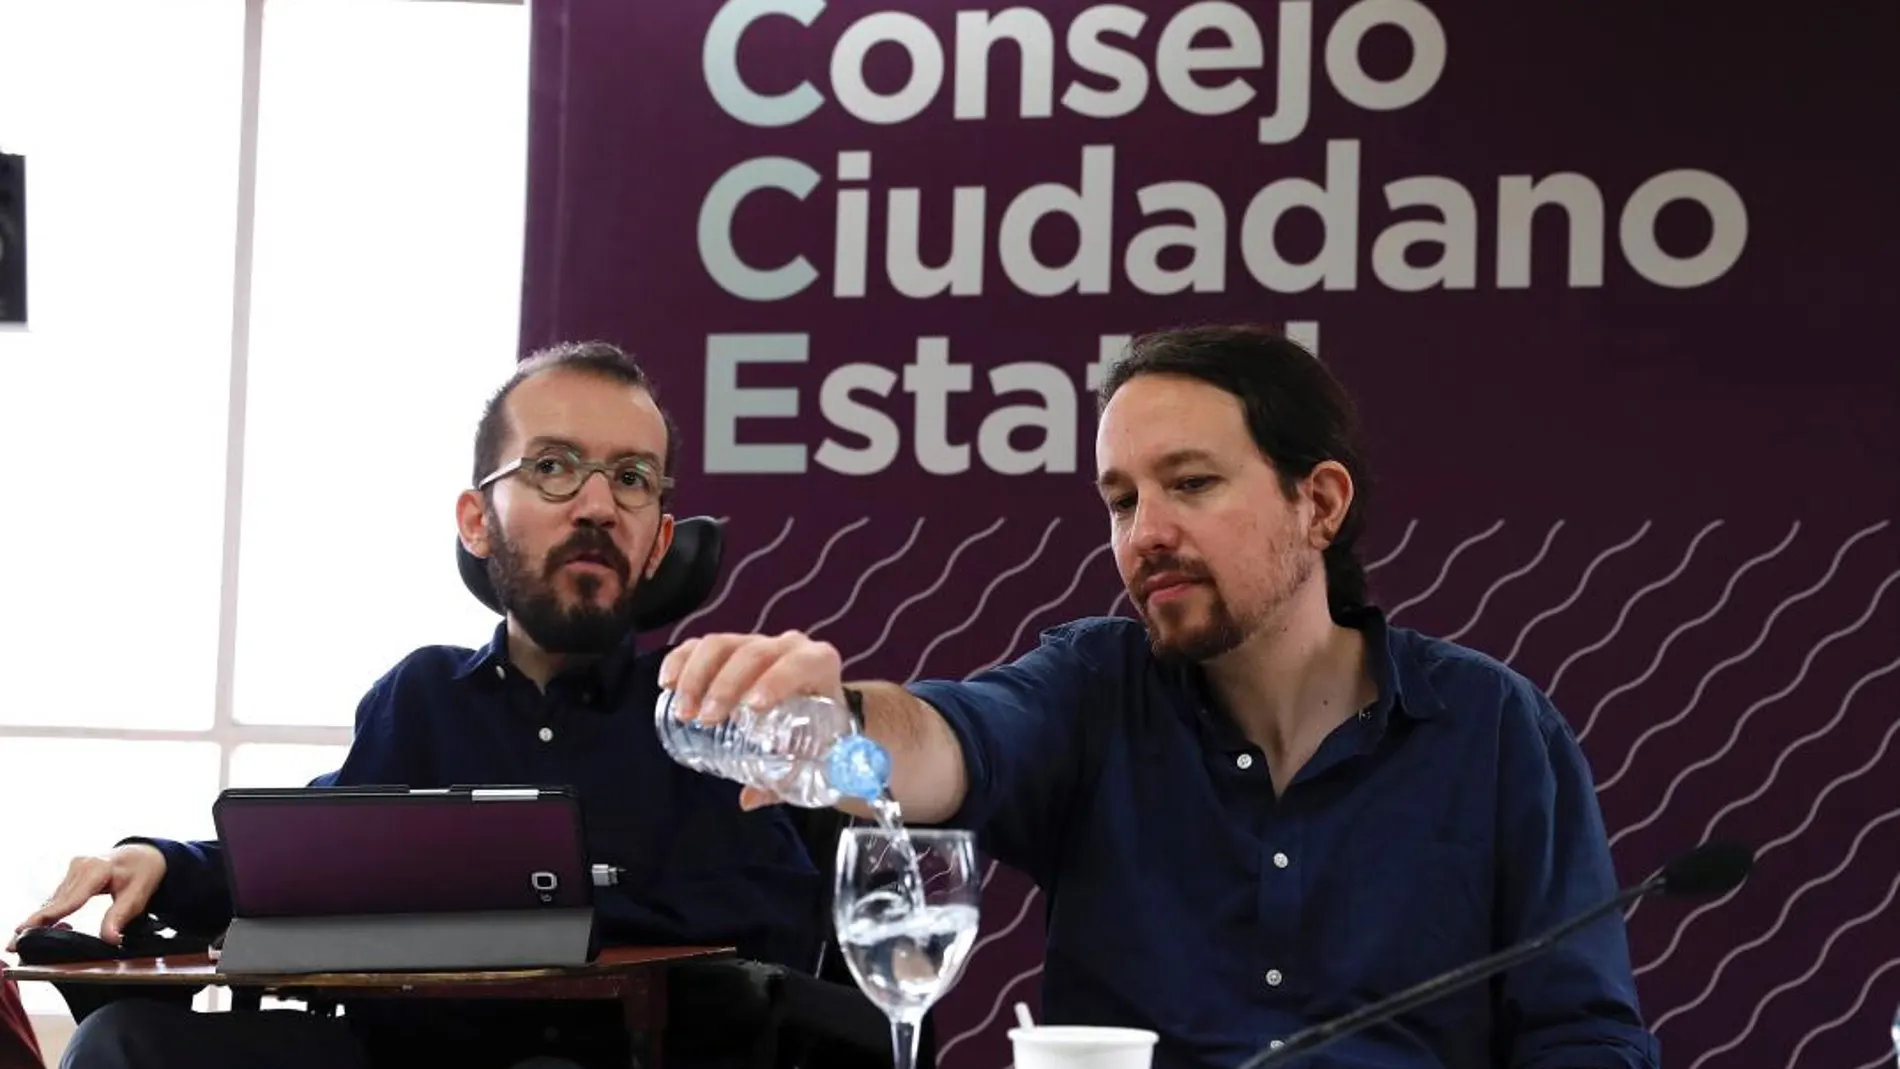 El vicepresidente segundo del Gobierno y líder de Podemos, Pablo Iglesias, en el último Consejo Ciudadano Estatal presencial celebrado en enero